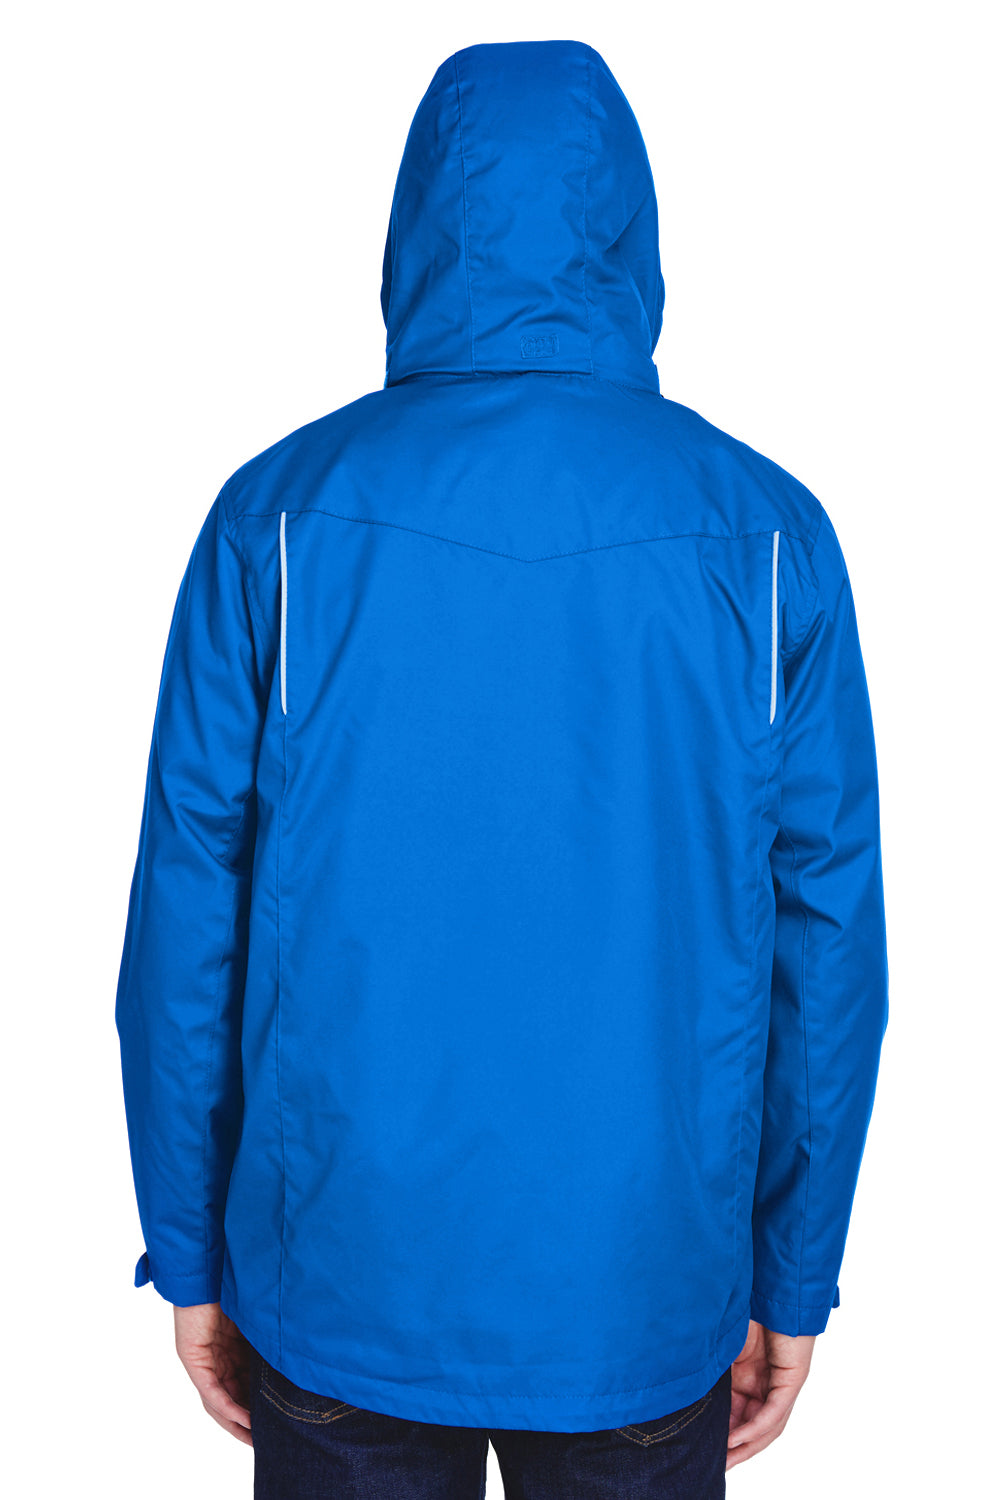 Core 365 88205 Mens Region 3-in-1 Water Resistant Full Zip Hooded Jacket Royal Blue Back